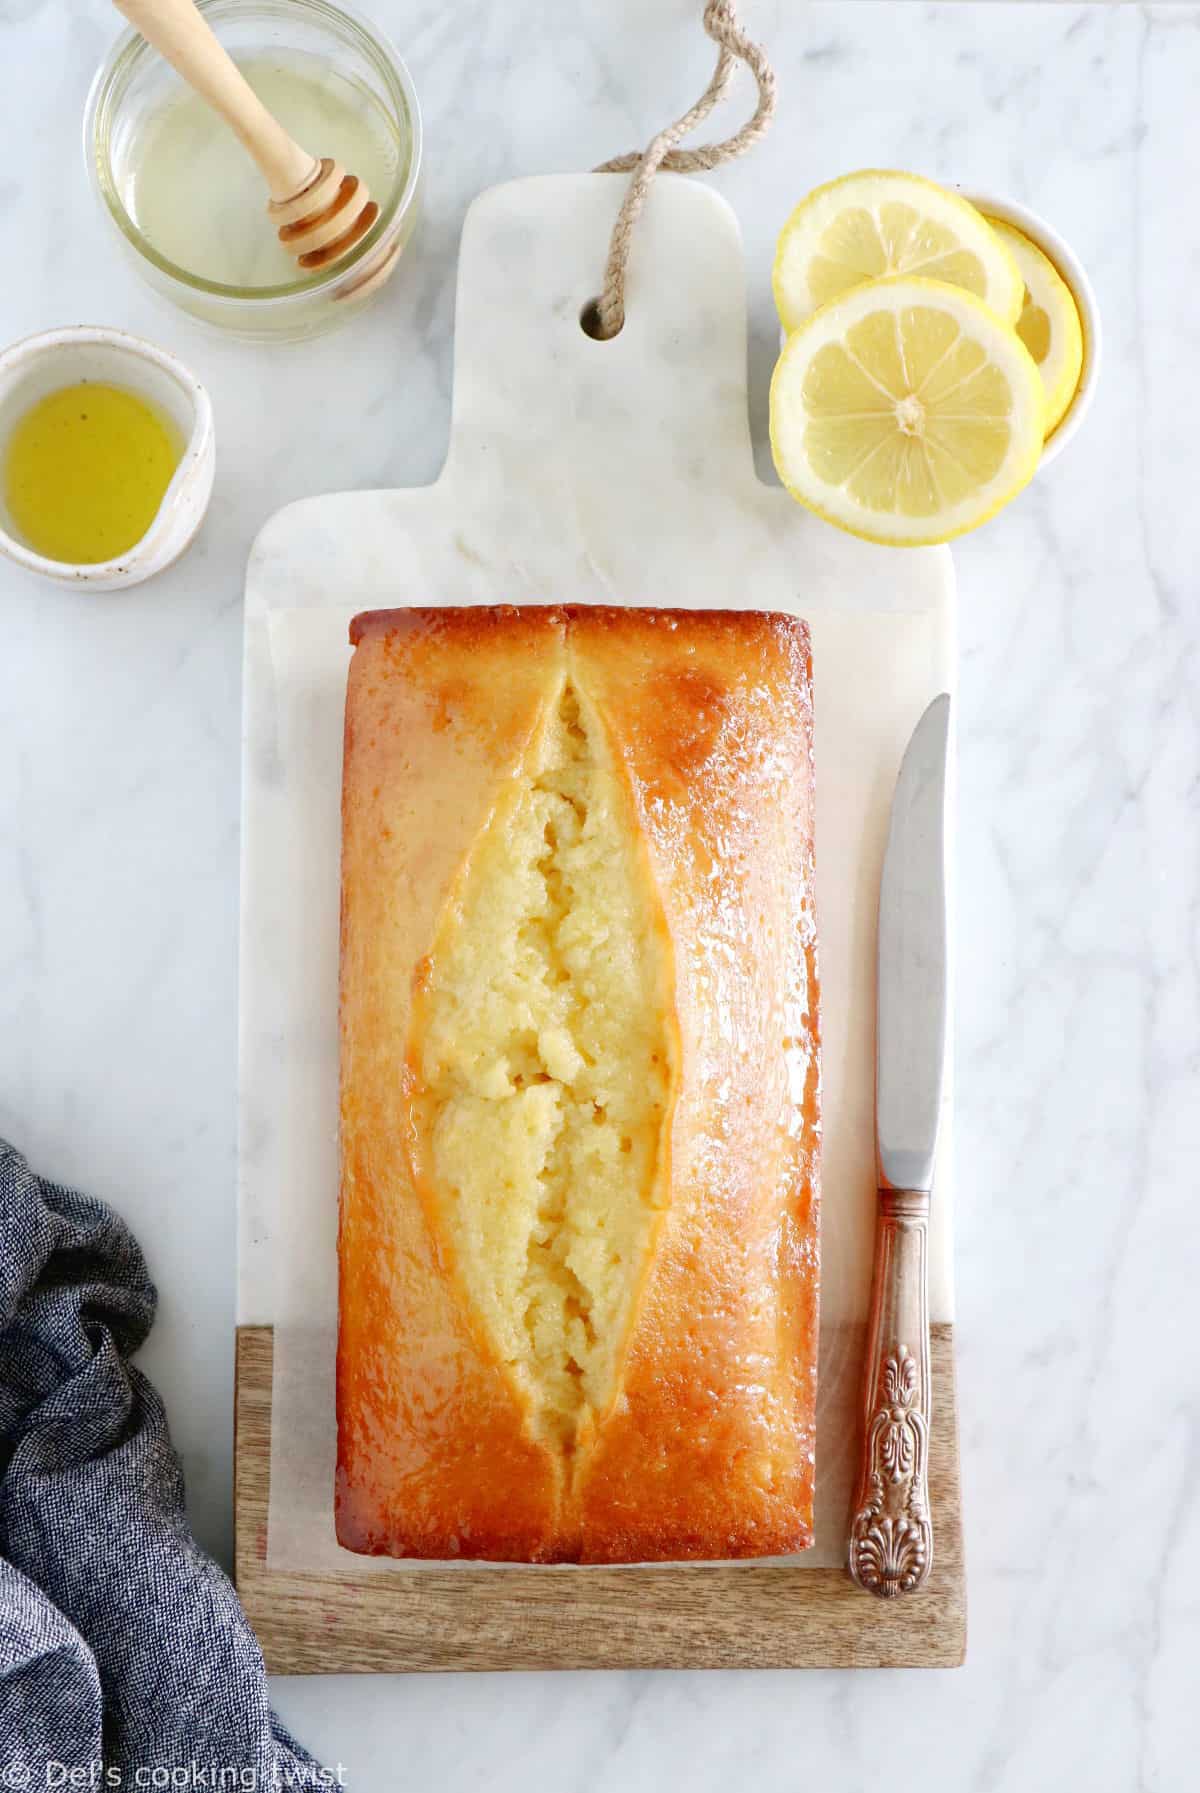 Ce cake au citron et à l'huile d'olive est la perfection incarnée. Riche, dense et acidulé, c'est le goûter rapide et simplissime par excellence.